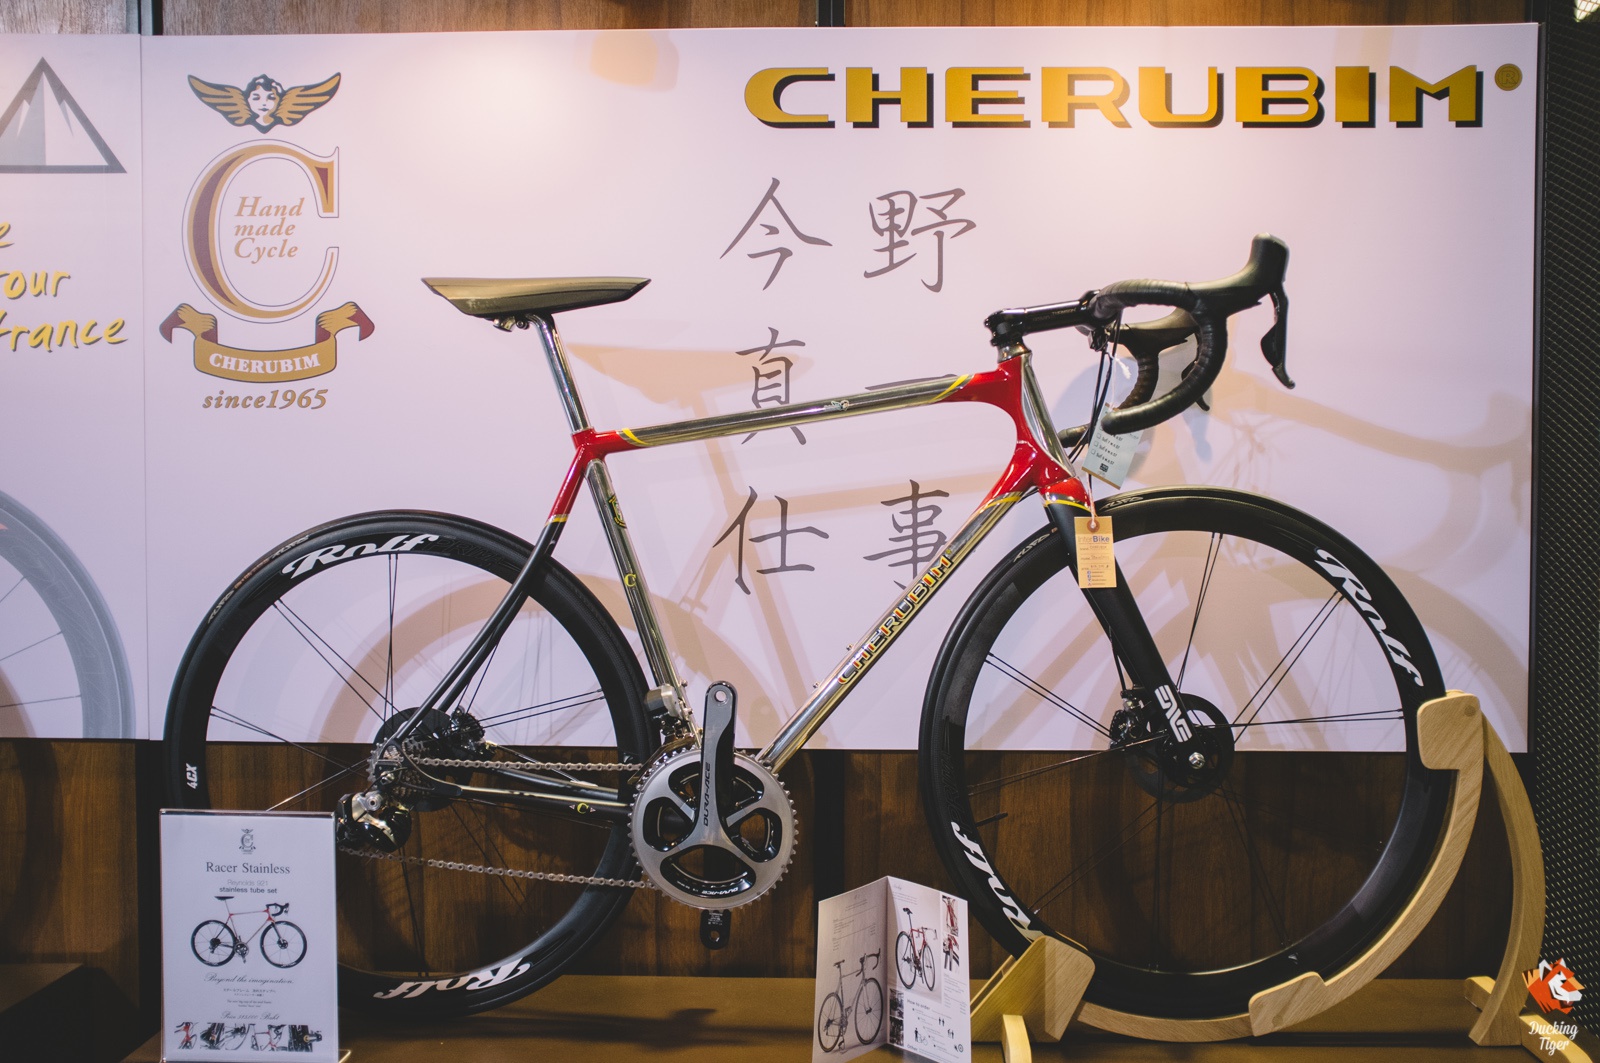 อีกหนึ่งบูทที่น่าสนใจคือ Interbike ที่ปีนี้เป็นตัวแทนนำเข้าจักรยาน Cherubim จากญี่ปุ่นแบบเต็มตัว 